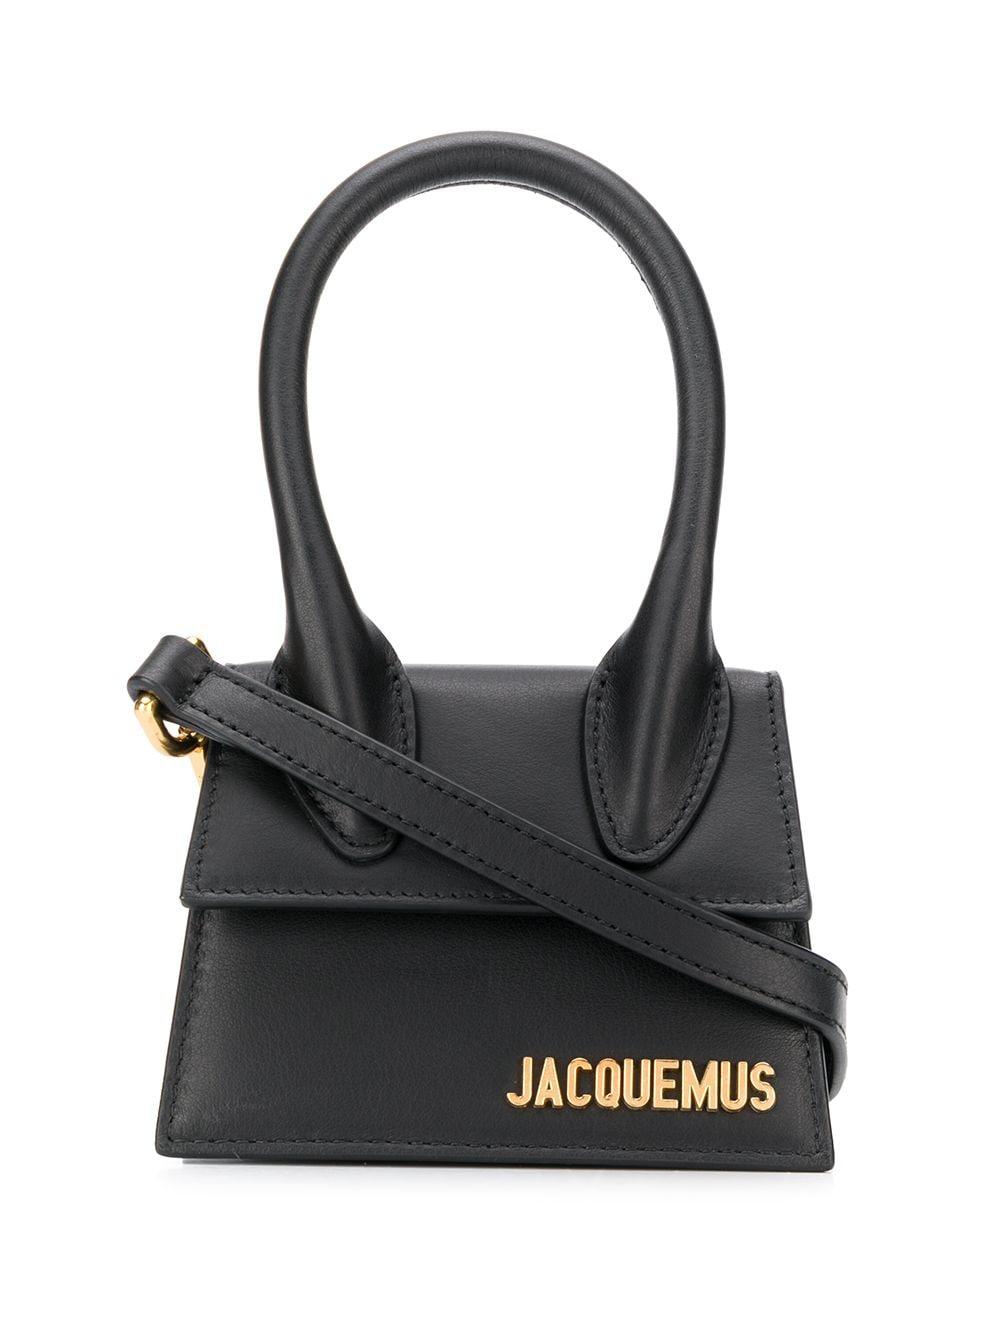 Jacquemus Le Chiquito Mini Bag in Black | Lyst